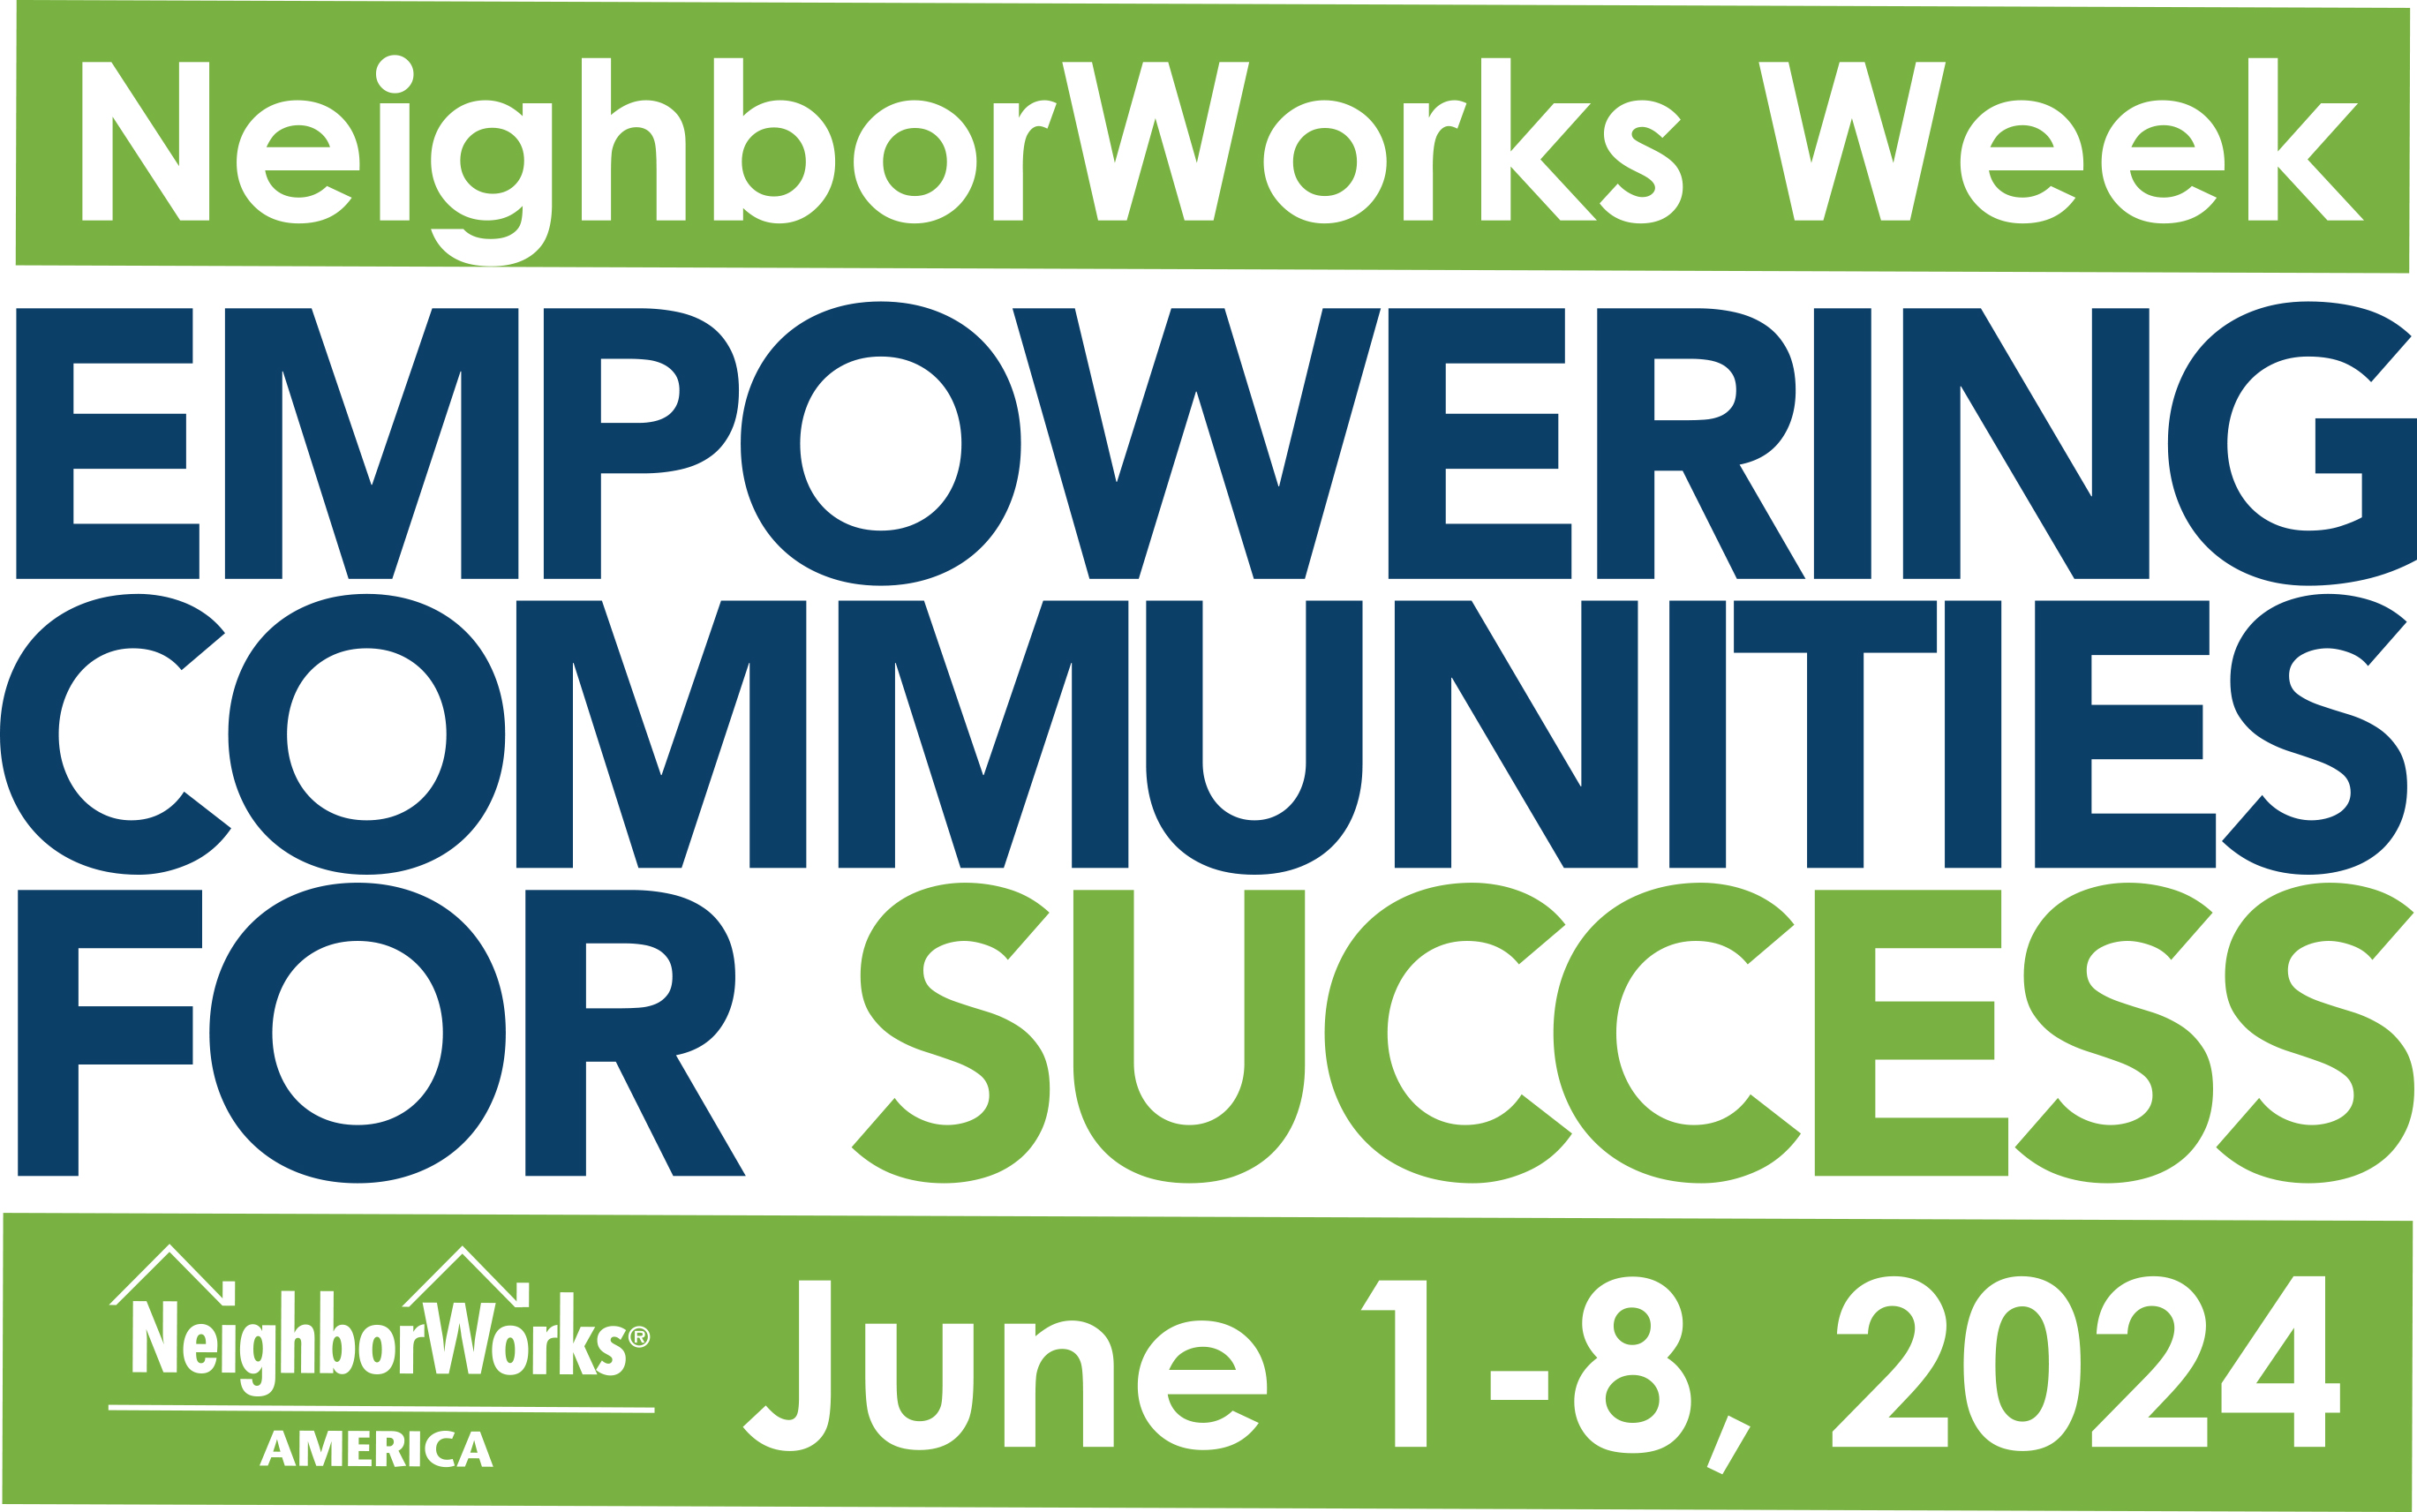 Volunteer During NeighborWorks Week June 2-7th!